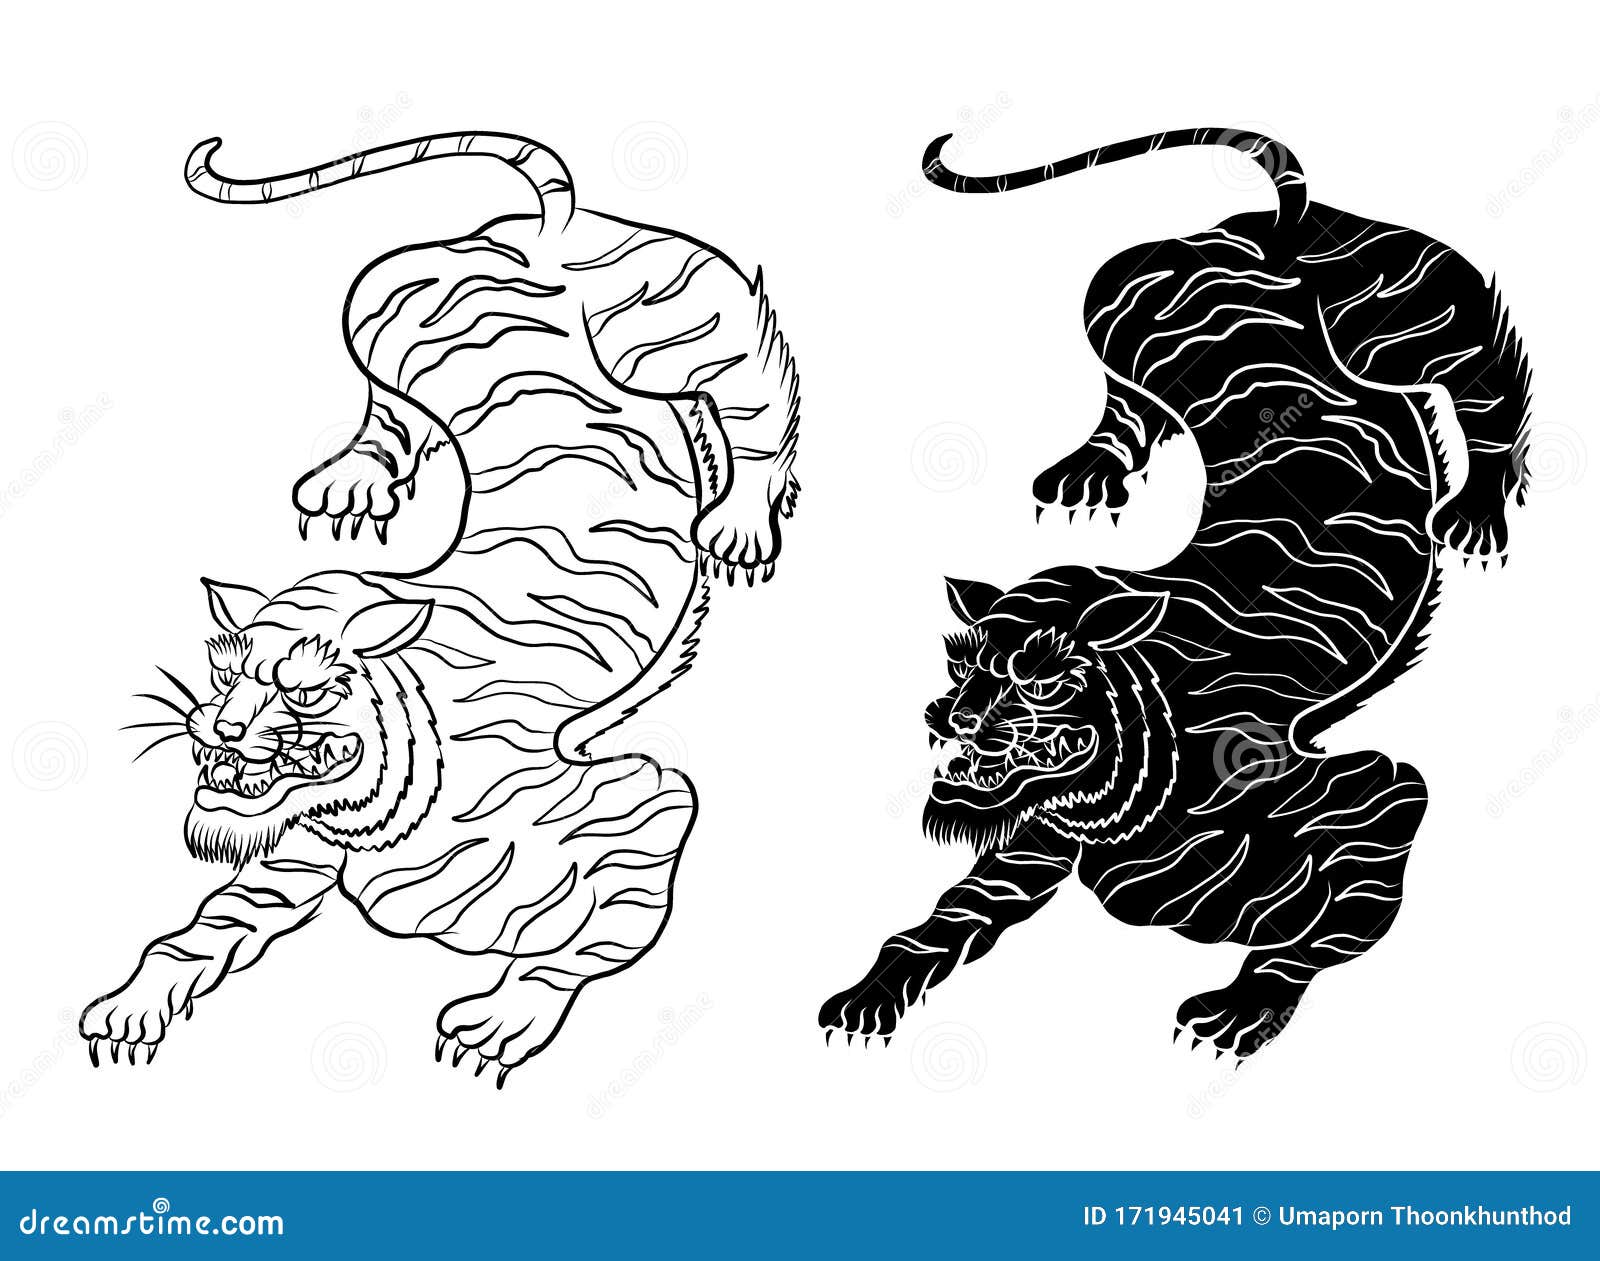 Bản Vẽ Đen Trắng Của Một Con Hổ Nhật Bản Hình minh họa Sẵn có - Tải xuống  Hình ảnh Ngay bây giờ - Hổ, Nhật Bản, Xăm - Nghệ thuật cơ thể - iStock